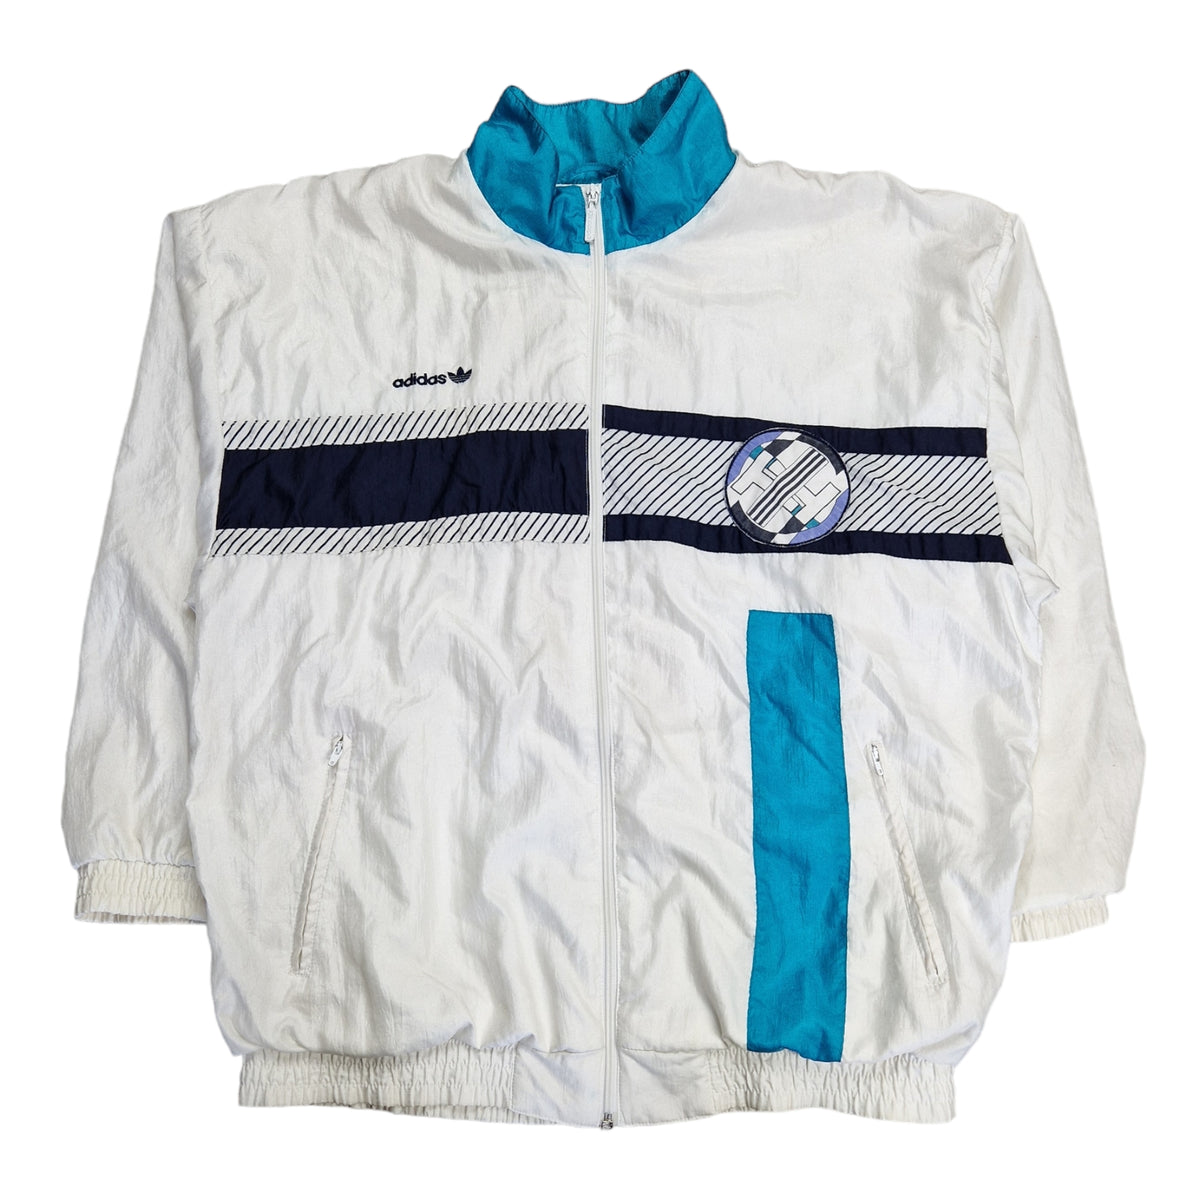 90's Adidas Shell Jacket - Size Large